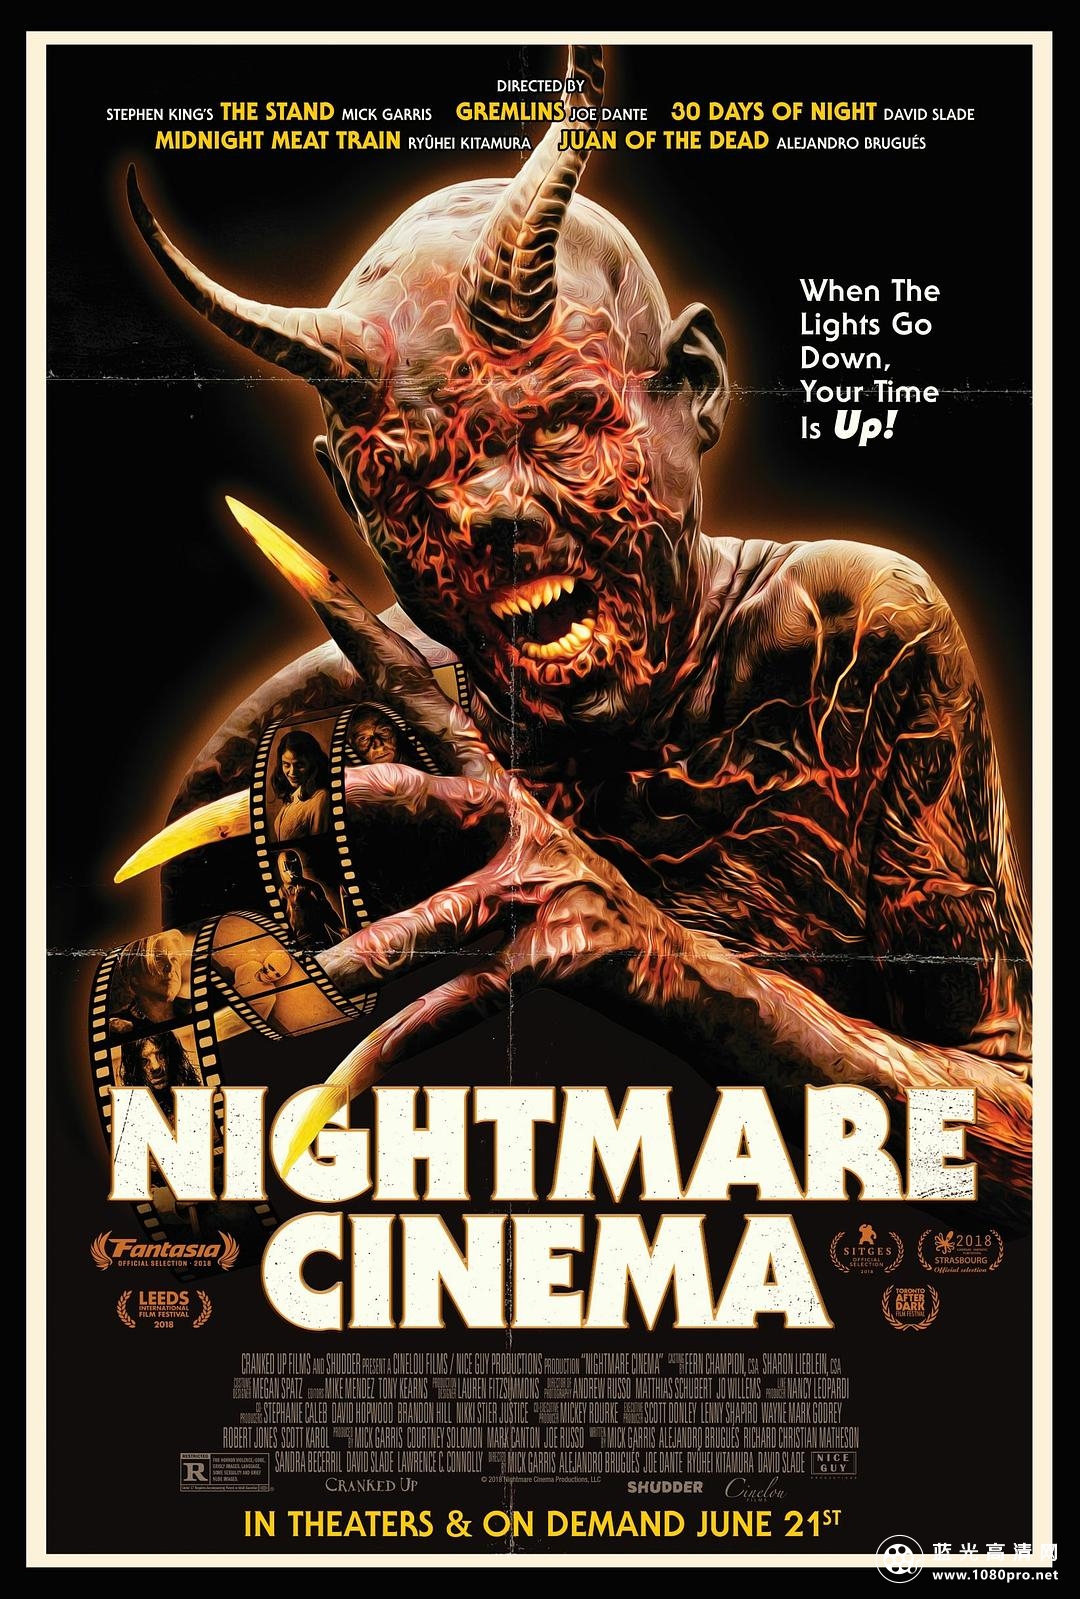 噩梦电影/噩梦电影院 Nightmare.Cinema.2018.1080p.BluRay.x264-SADPANDA 7.95GB-1.png